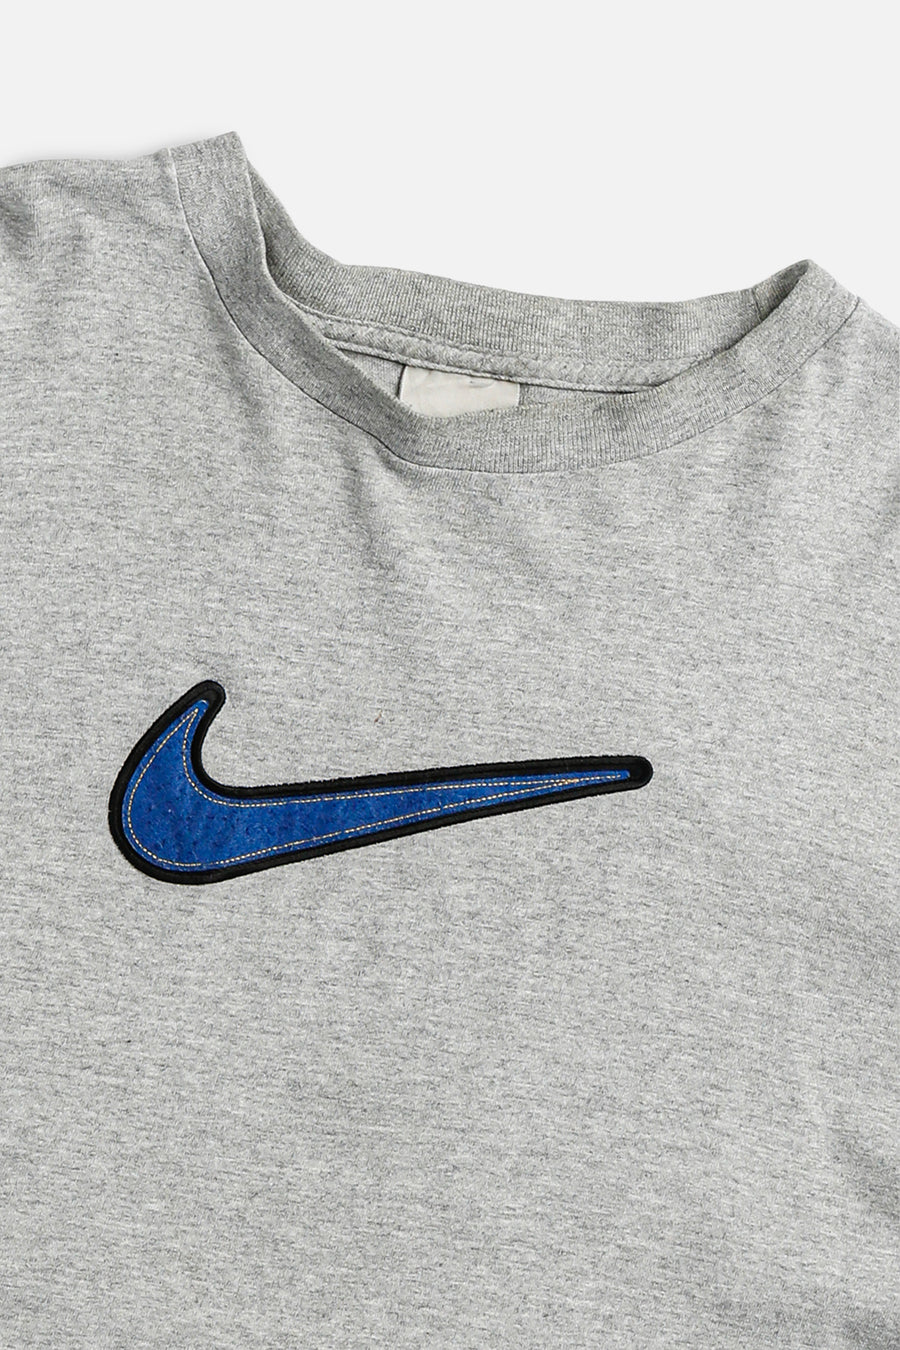 Vintage Nike Long Sleeve Tee - L